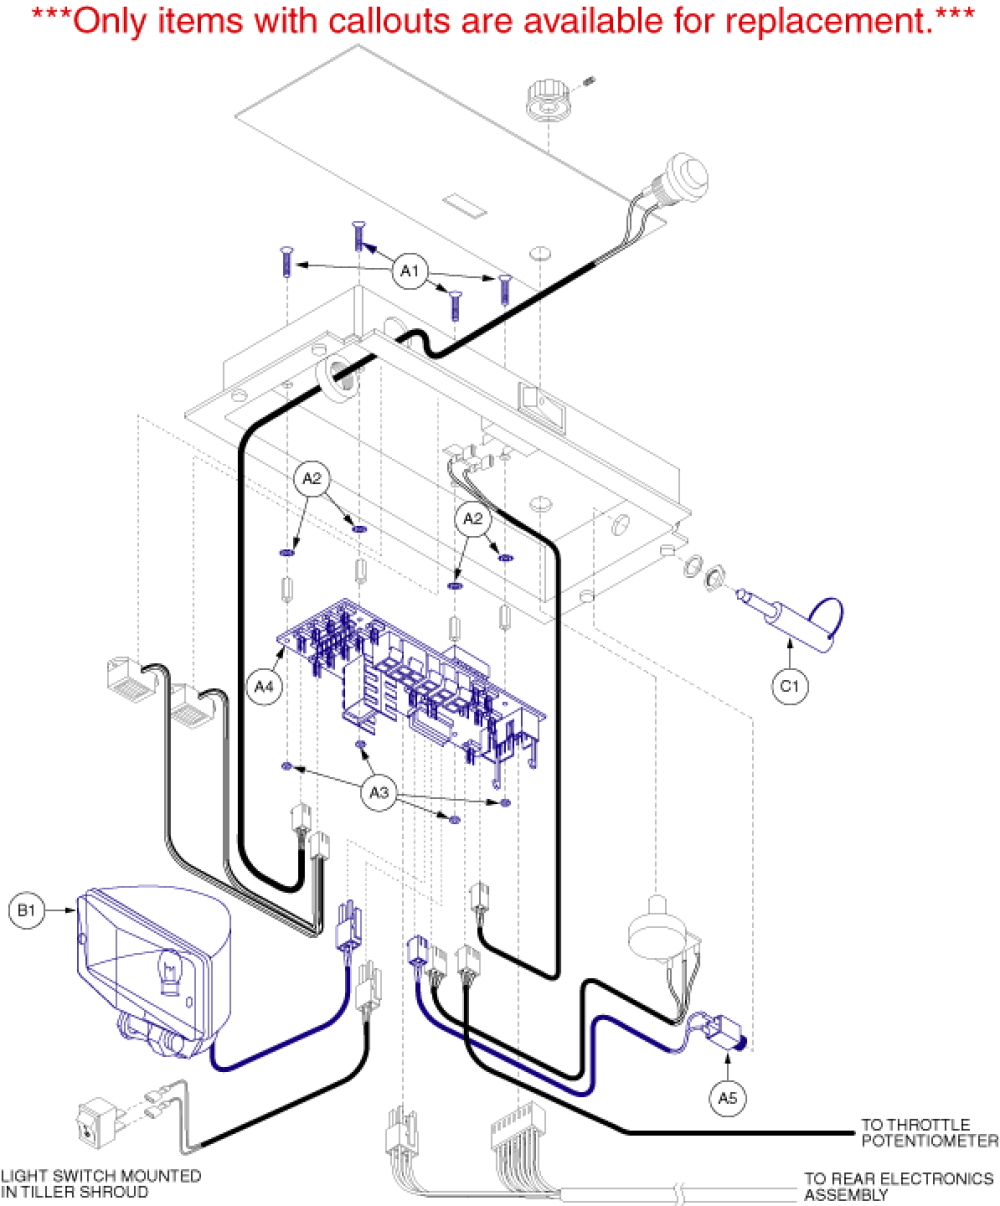 Electronics Assembly - Console_gen 2 parts diagram